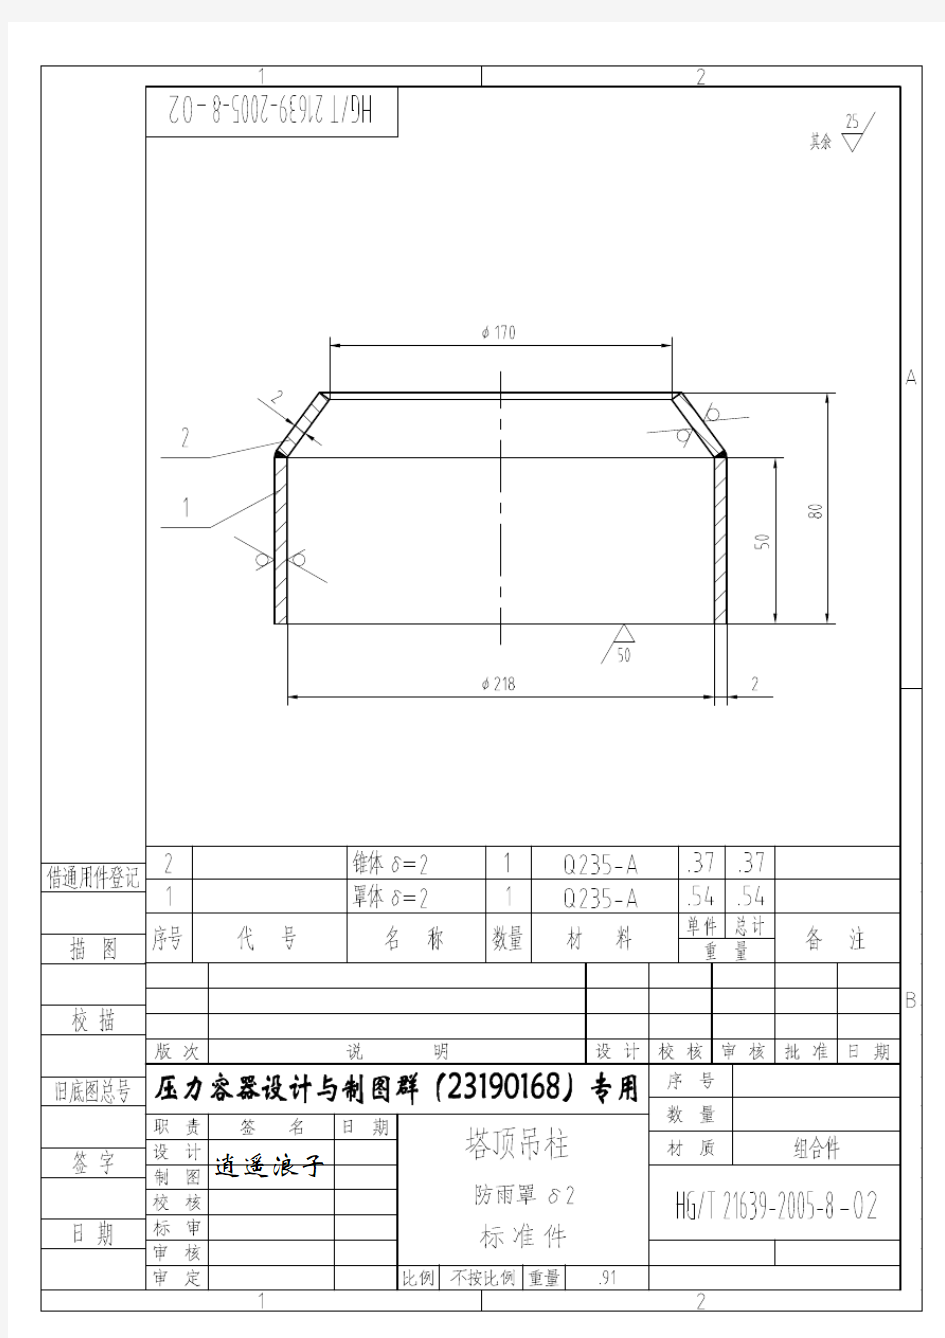 HG-T 21639-2005 塔顶吊柱(施工图纸)3